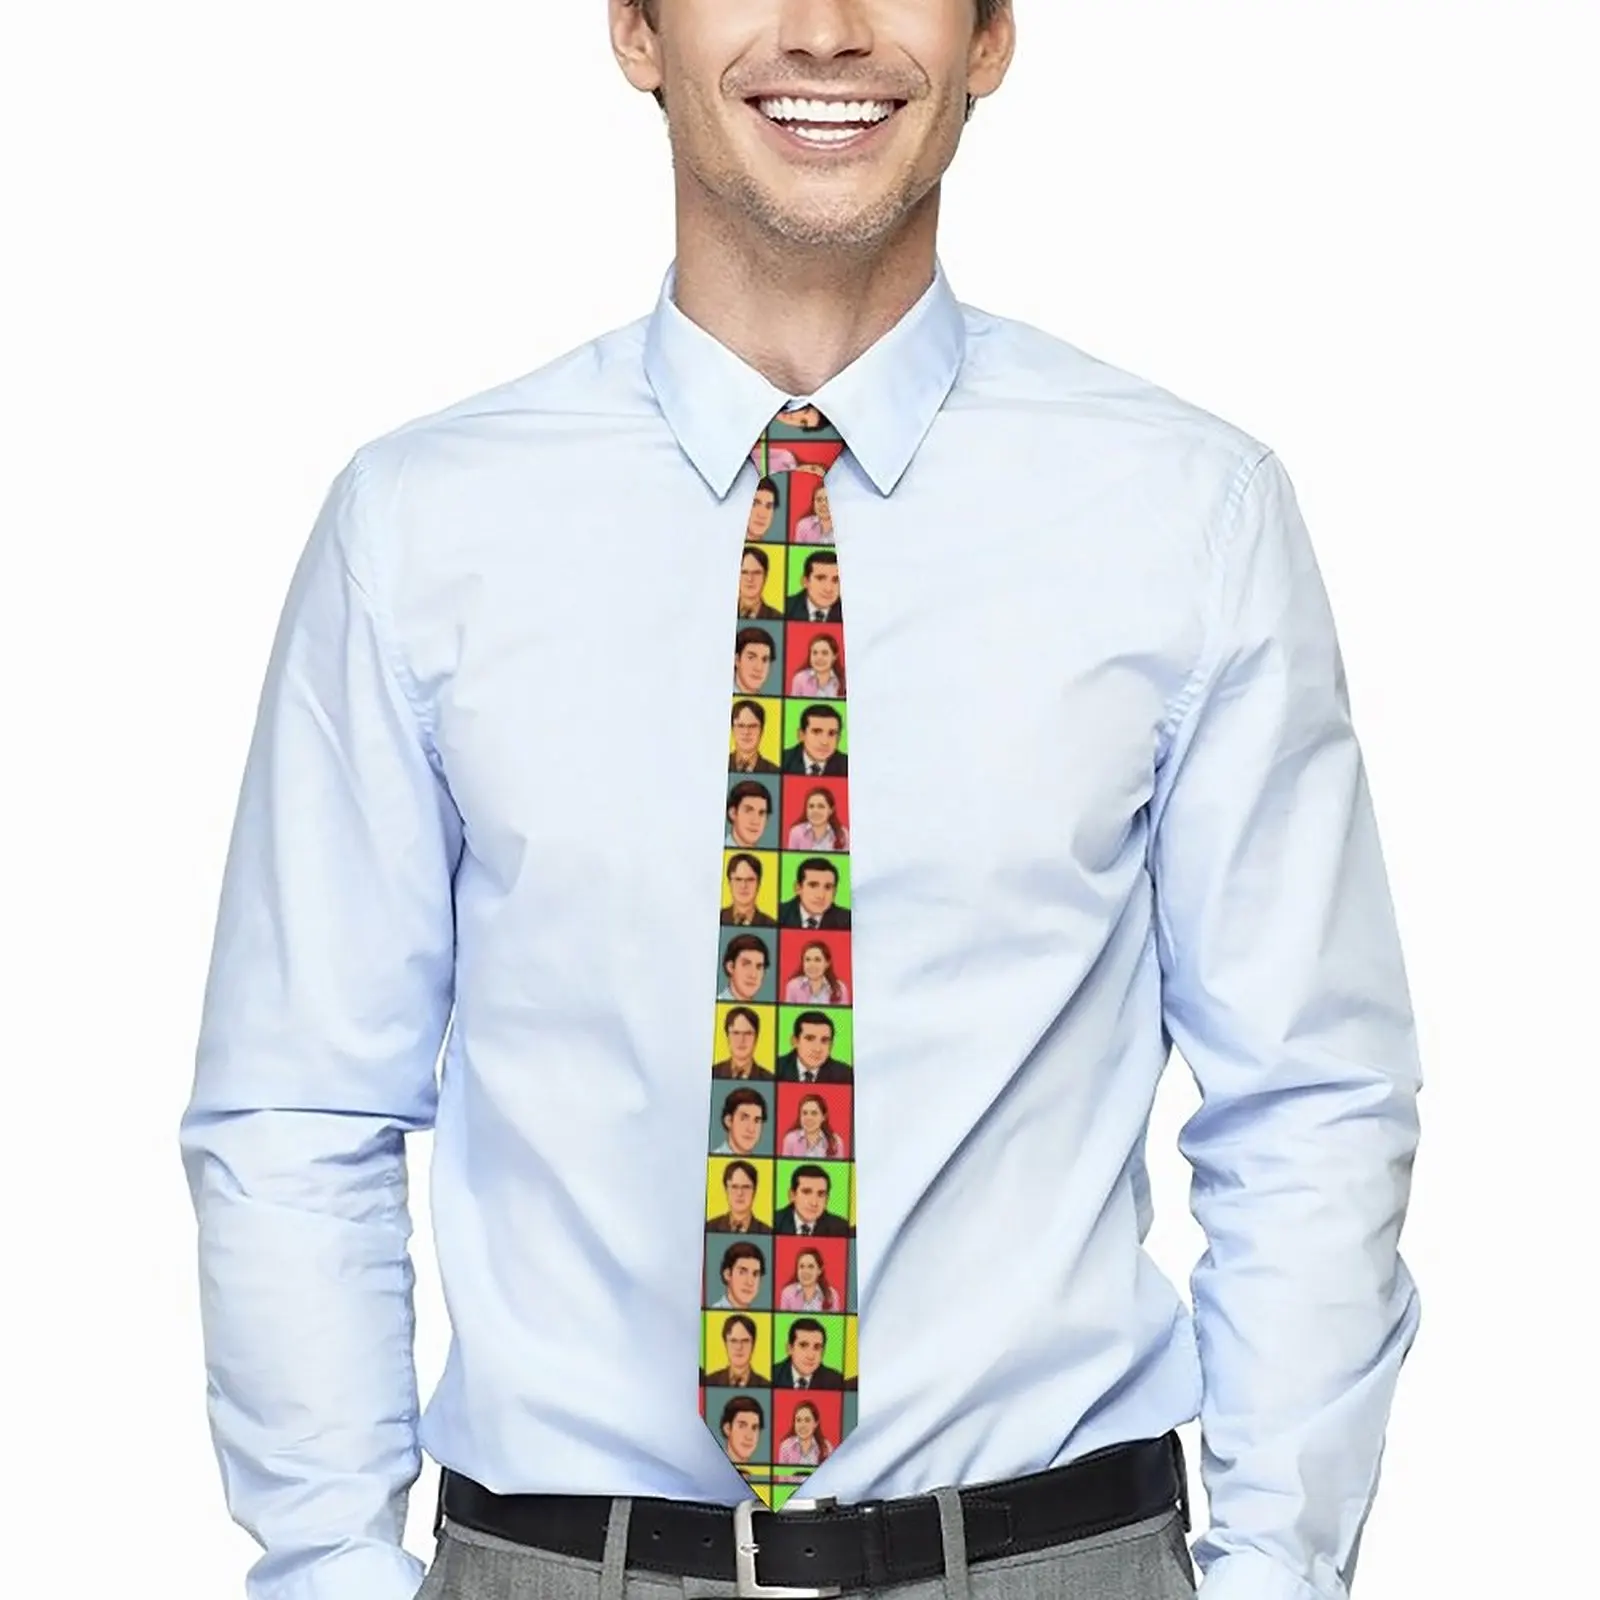 

Dwight Schrute галстук офисный дизайн шеи галстуки Милый Забавный воротник галстук для мужчин досуг аксессуары для галстуков